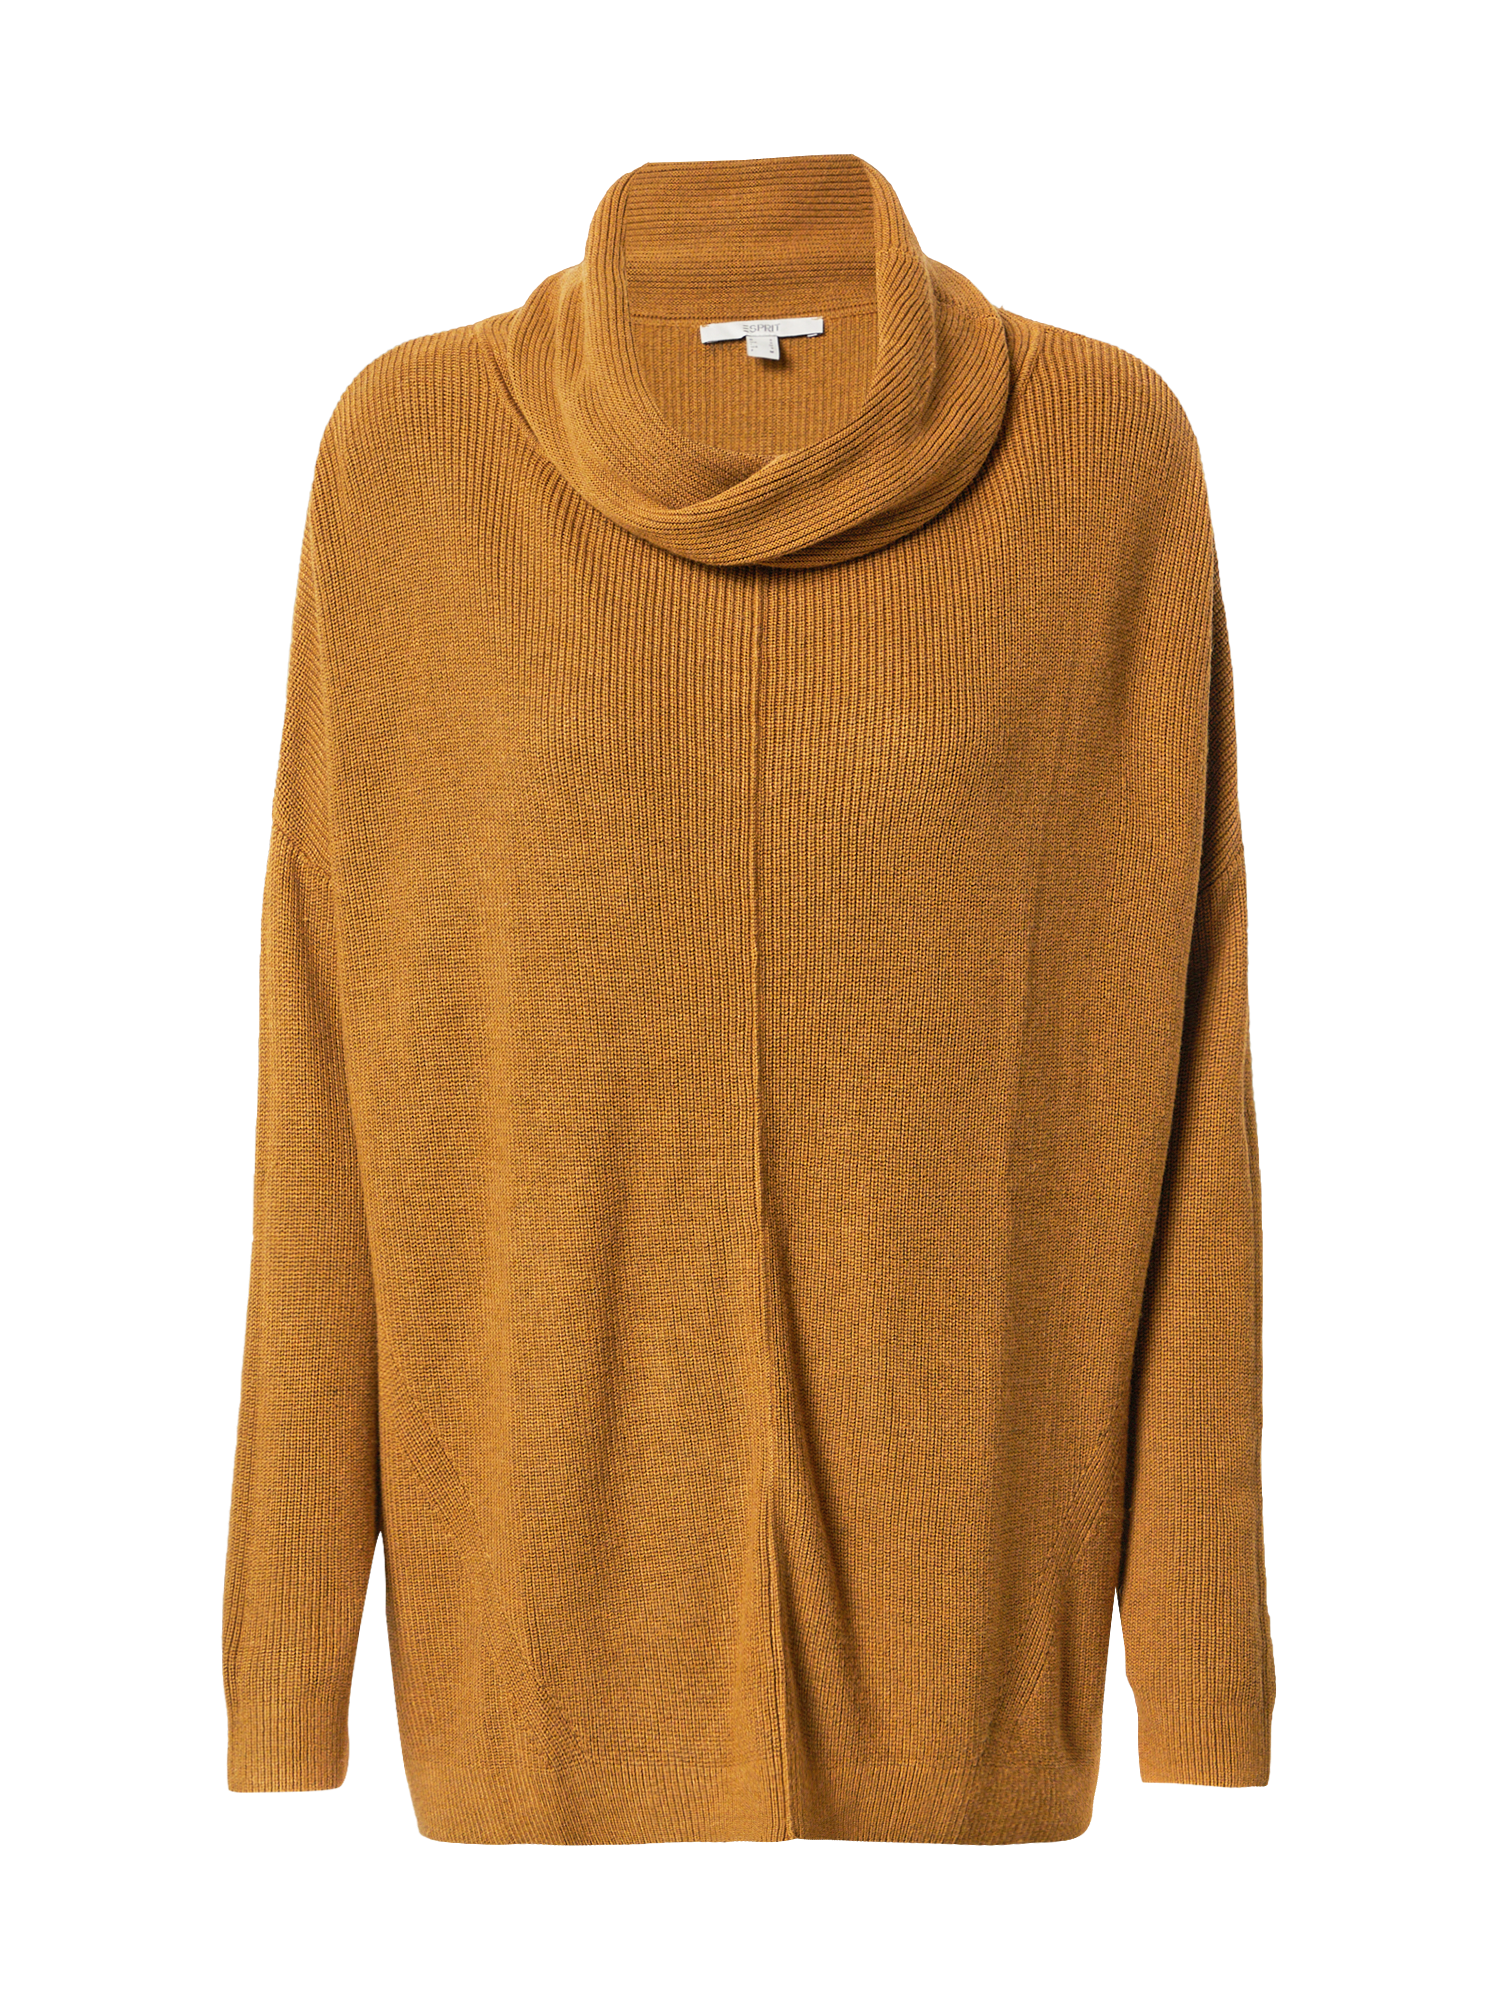 Swetry & dzianina Odzież ESPRIT Sweter w kolorze Koniakowym 